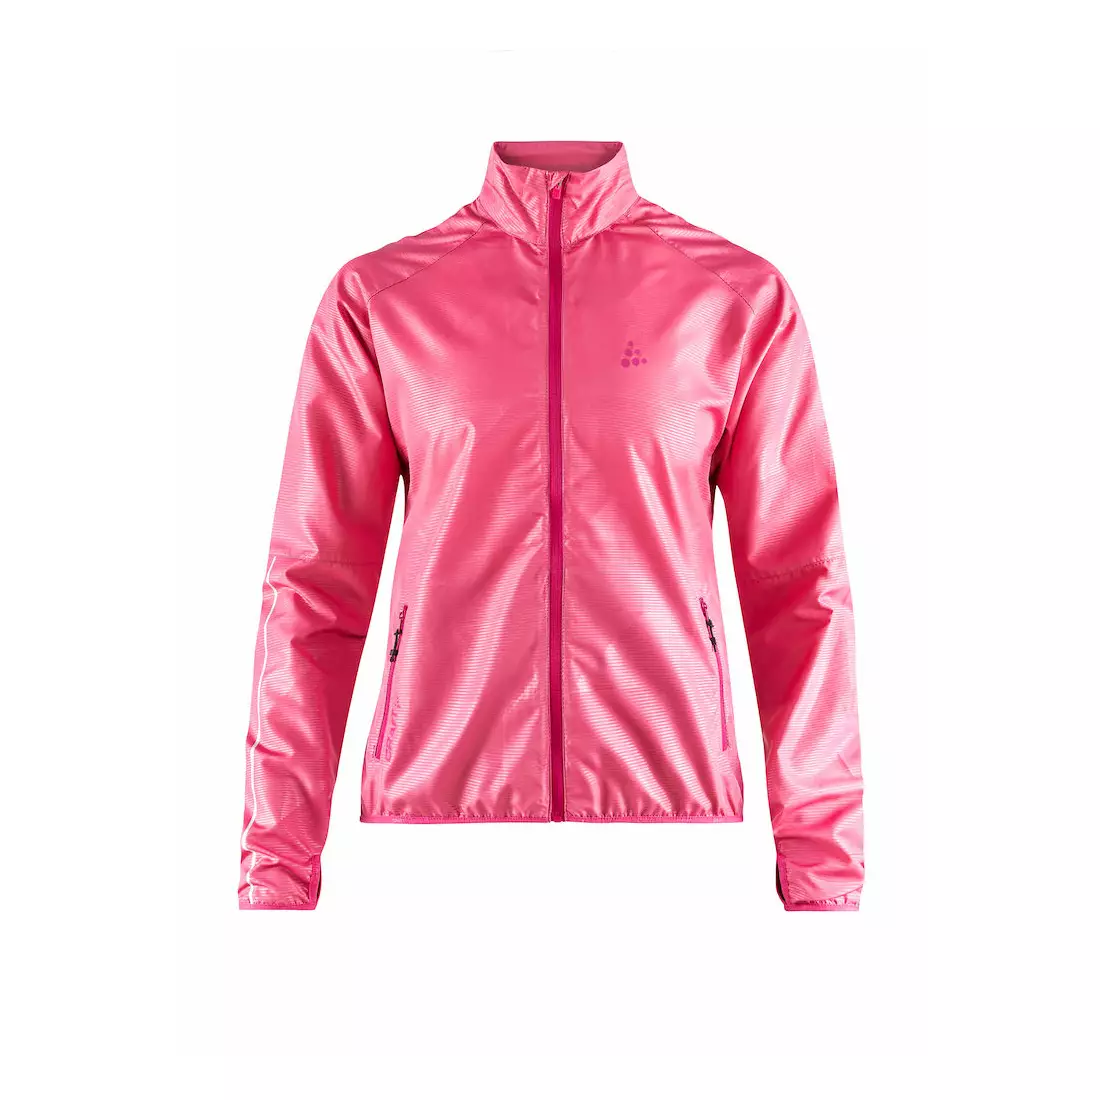 CRAFT EAZE lightweight running jacket, women, pink 1906401-720000